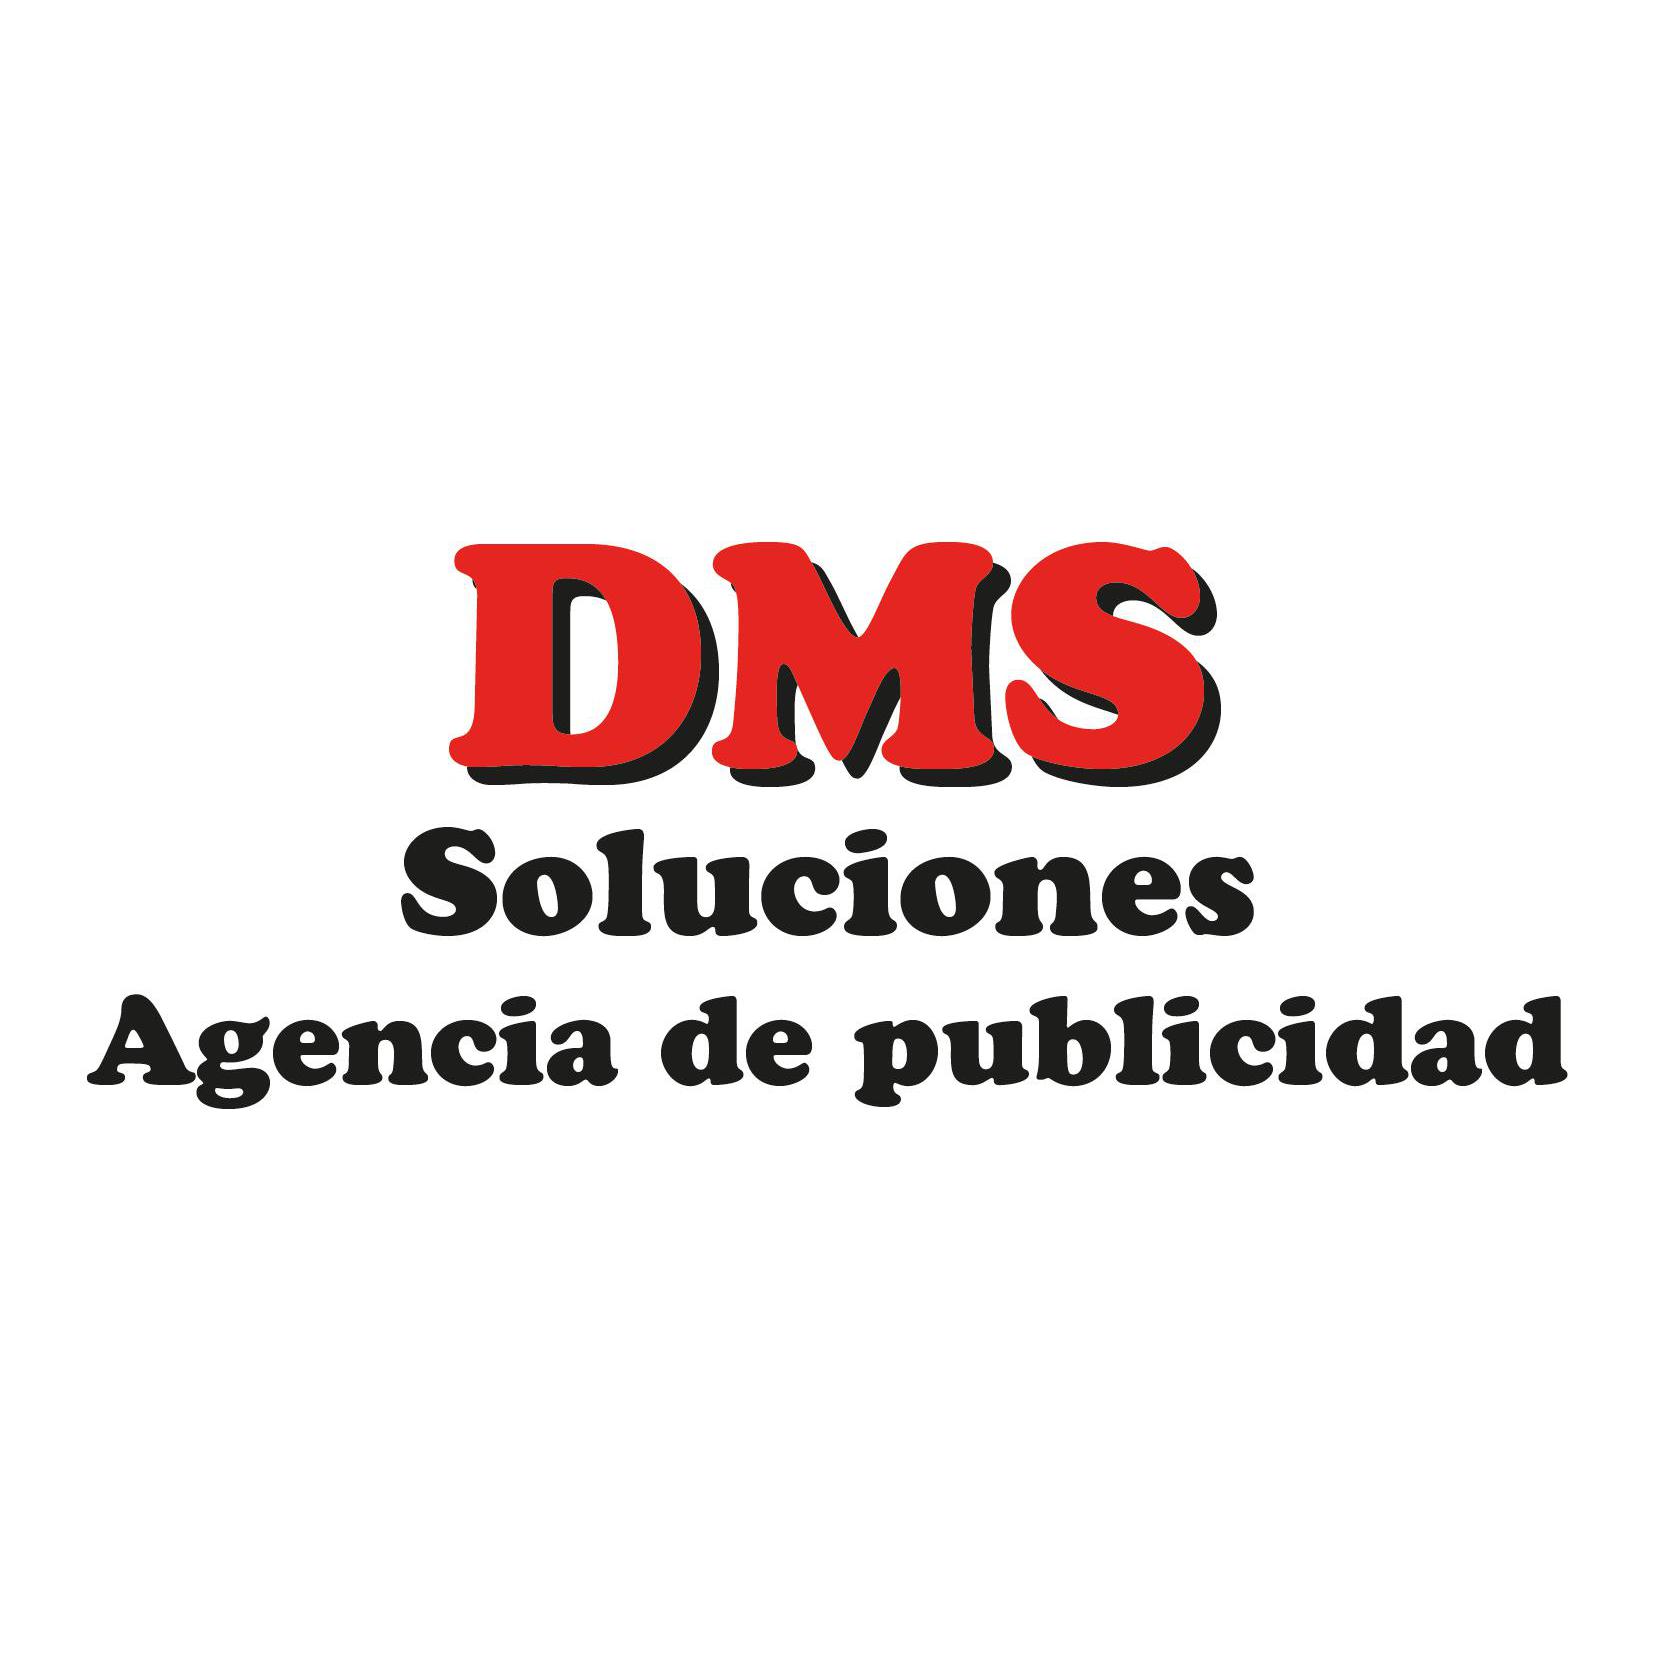 DMSsoluciones Agencia de Publicidad Bilbao